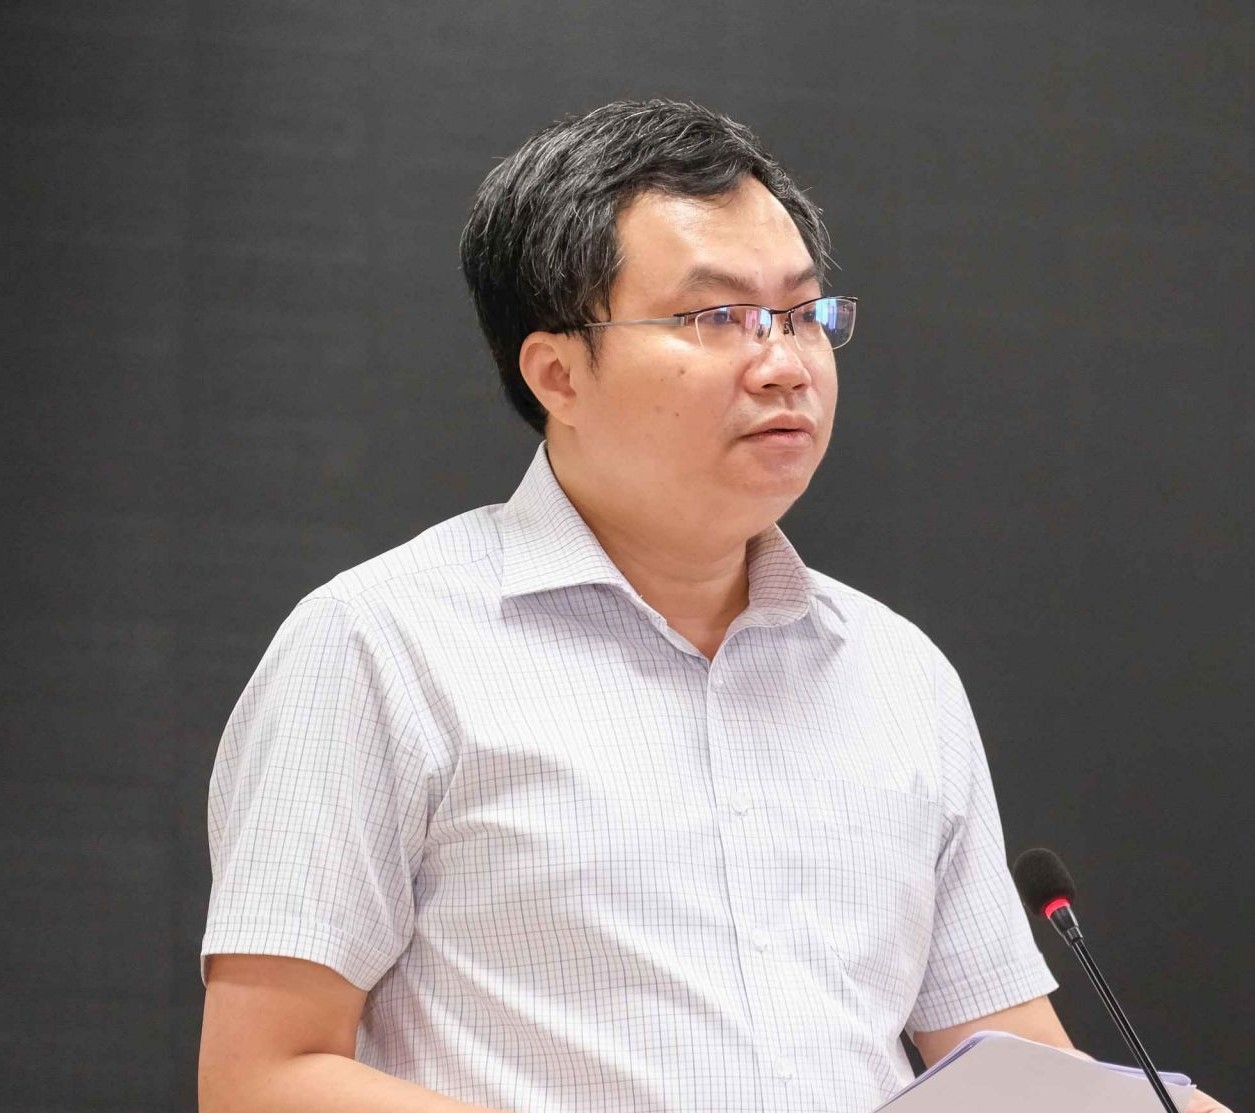 Ông Trần Việt Hòa - Cục trưởng Cục Điều tiết điện lực, Bộ Công Thương thông tin tại buổi họp báo